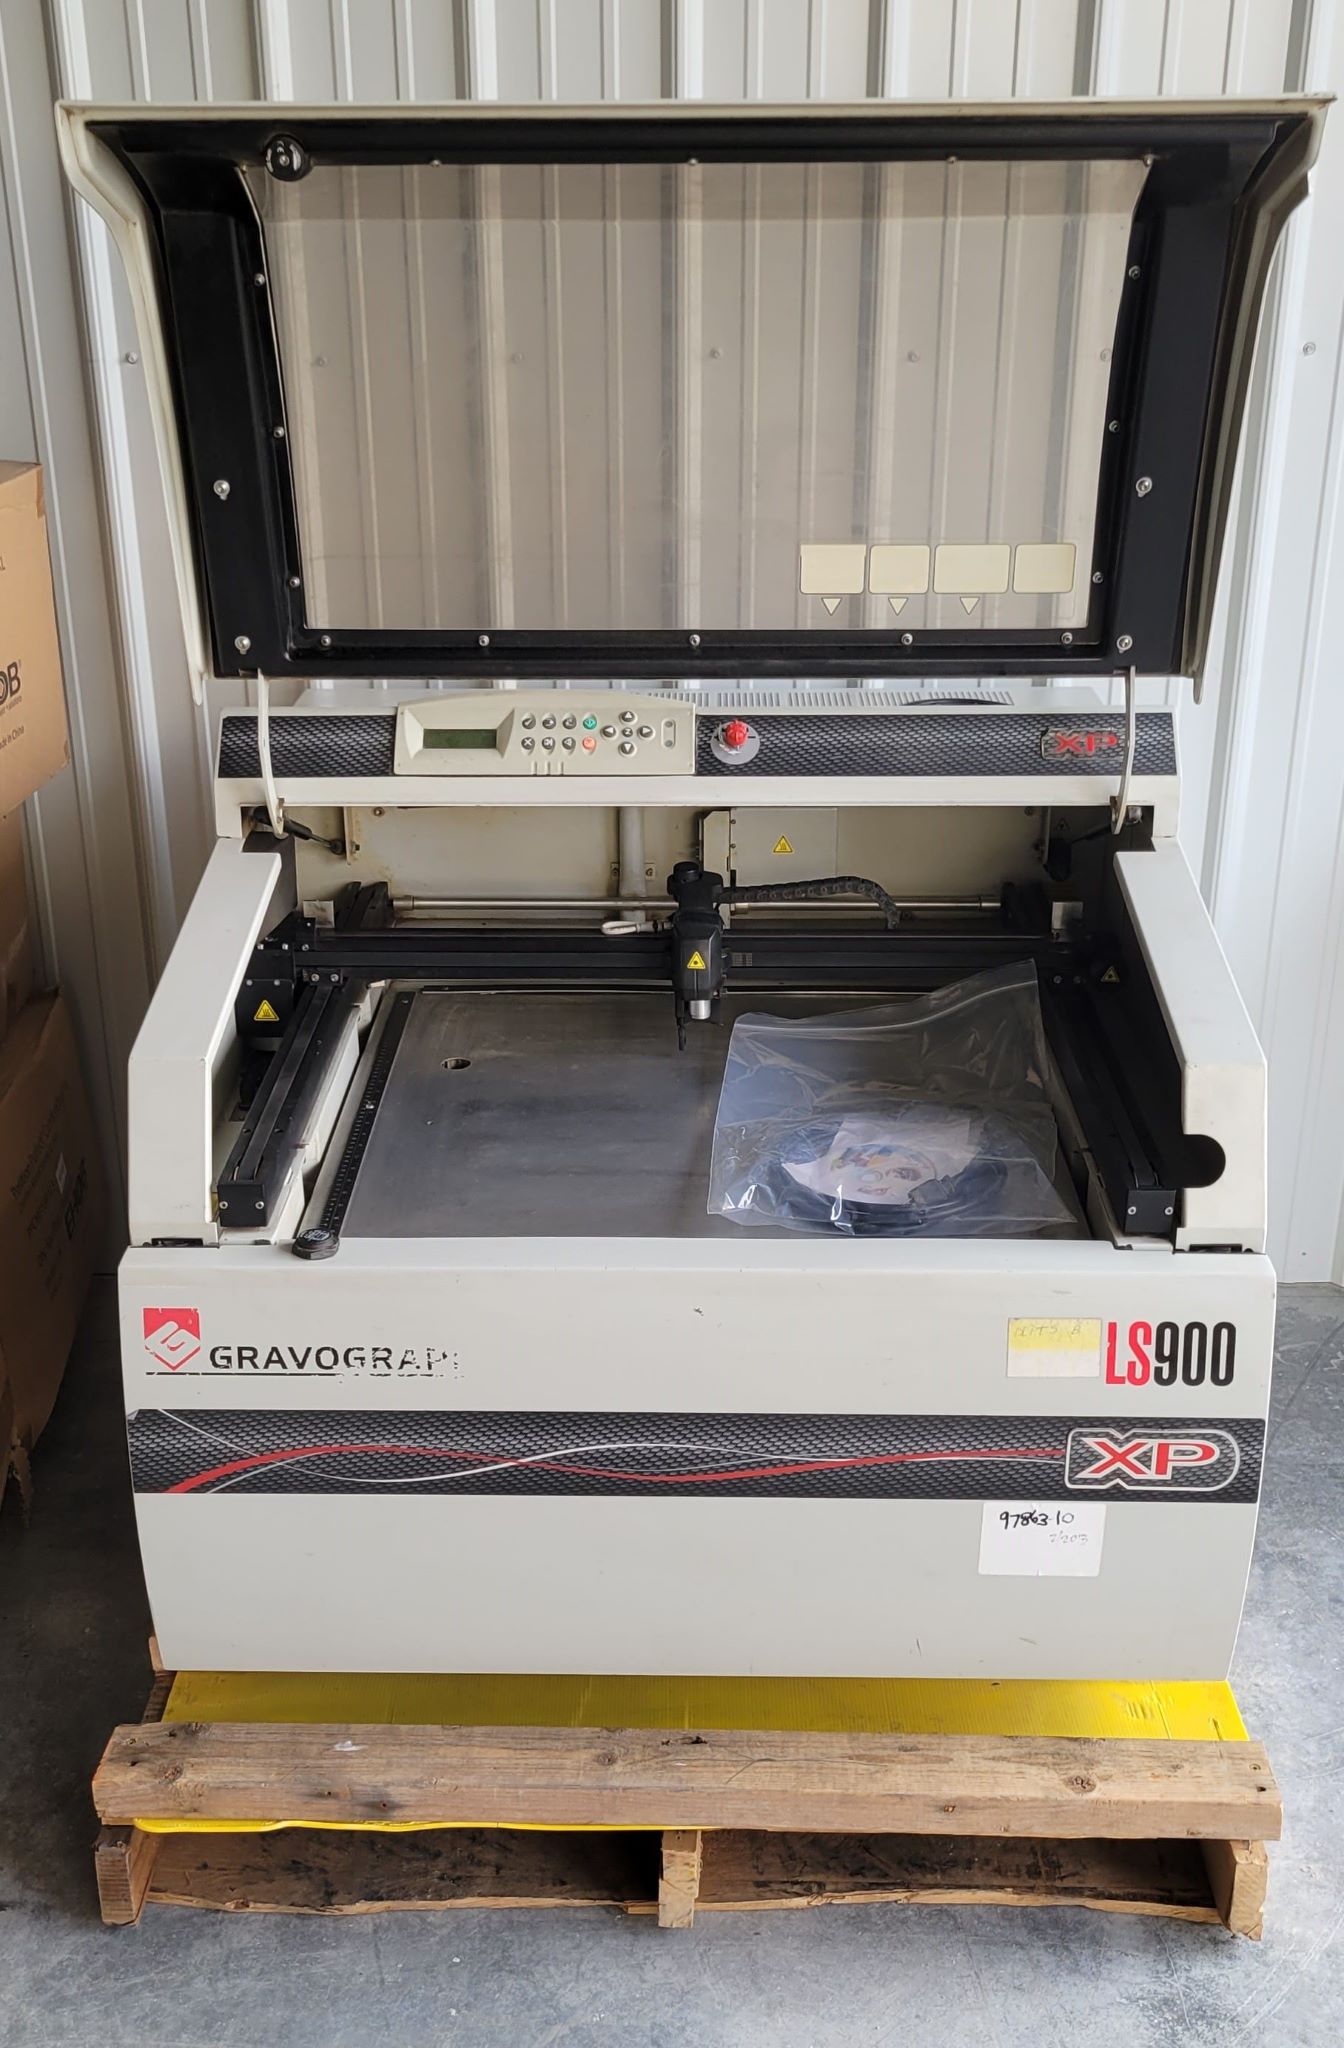 Equipment Lot: Gravotech / Gravograph LS900 XP / LS900XP Laser Engraver, Epilog Fusion Pro 16000 Laser System, Stratasys F370 3D Printer (Used) Item # UE-121123A